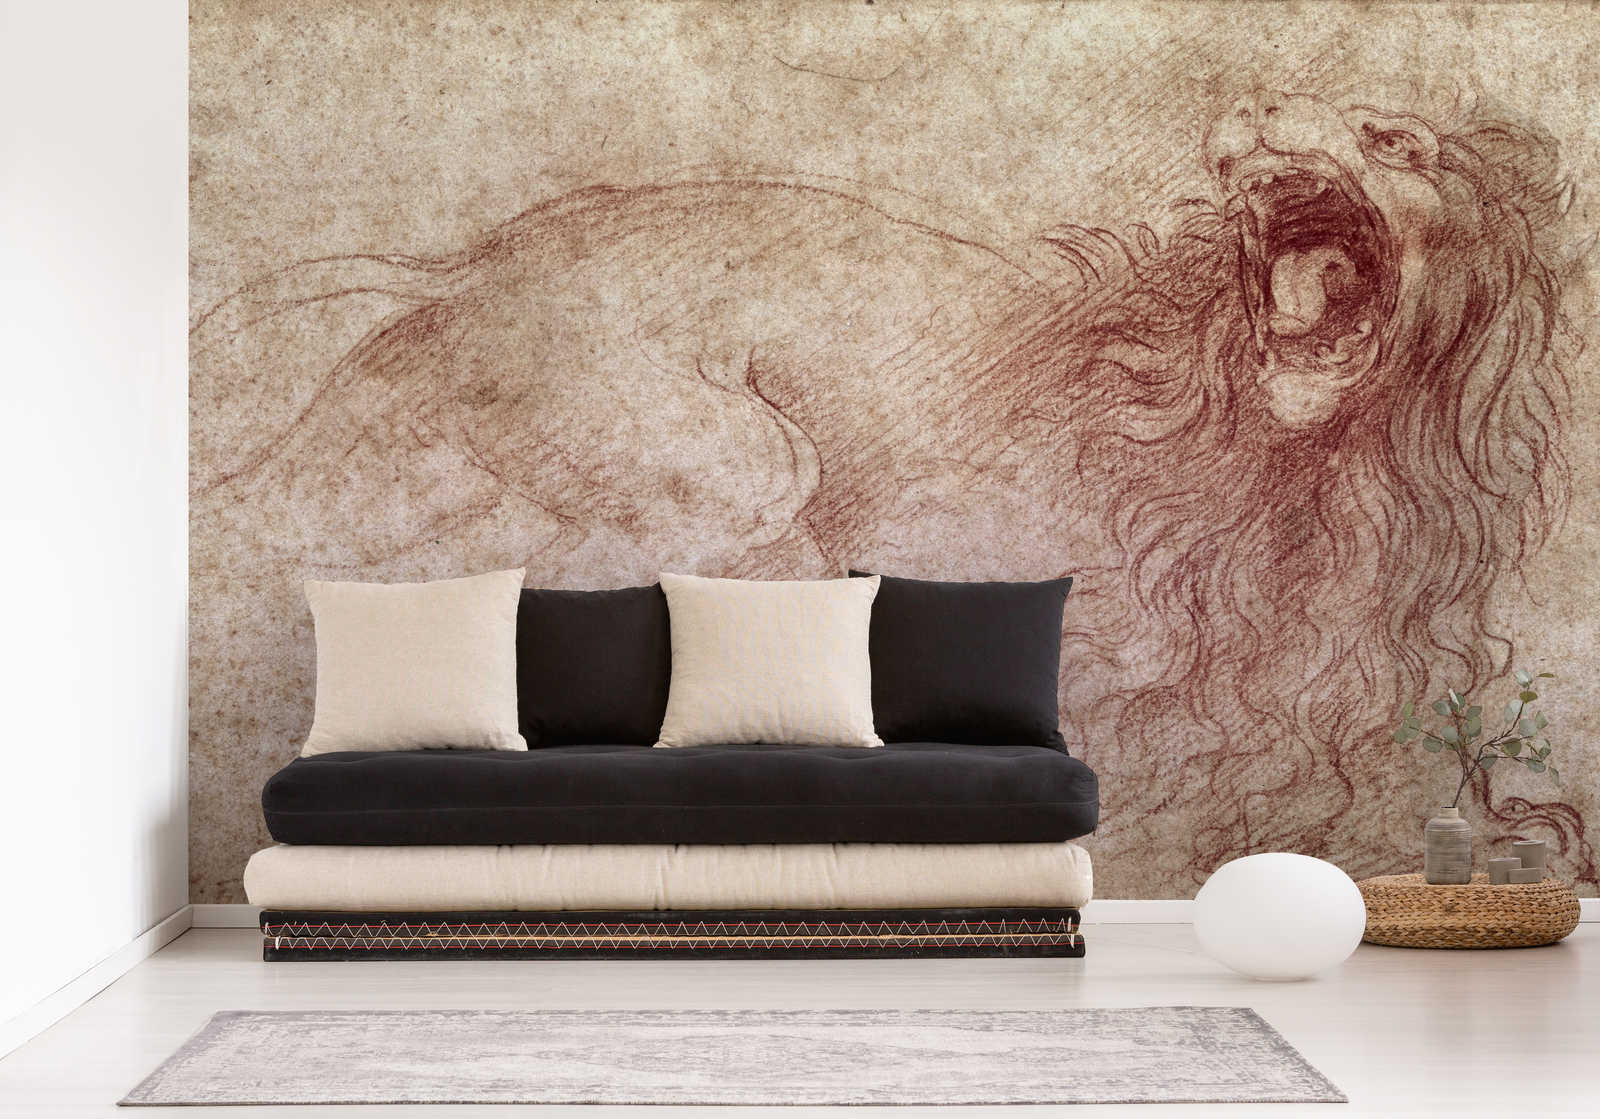             Fototapete "Skizze eines brüllenden Löwen " von Leonardo da Vinci
        